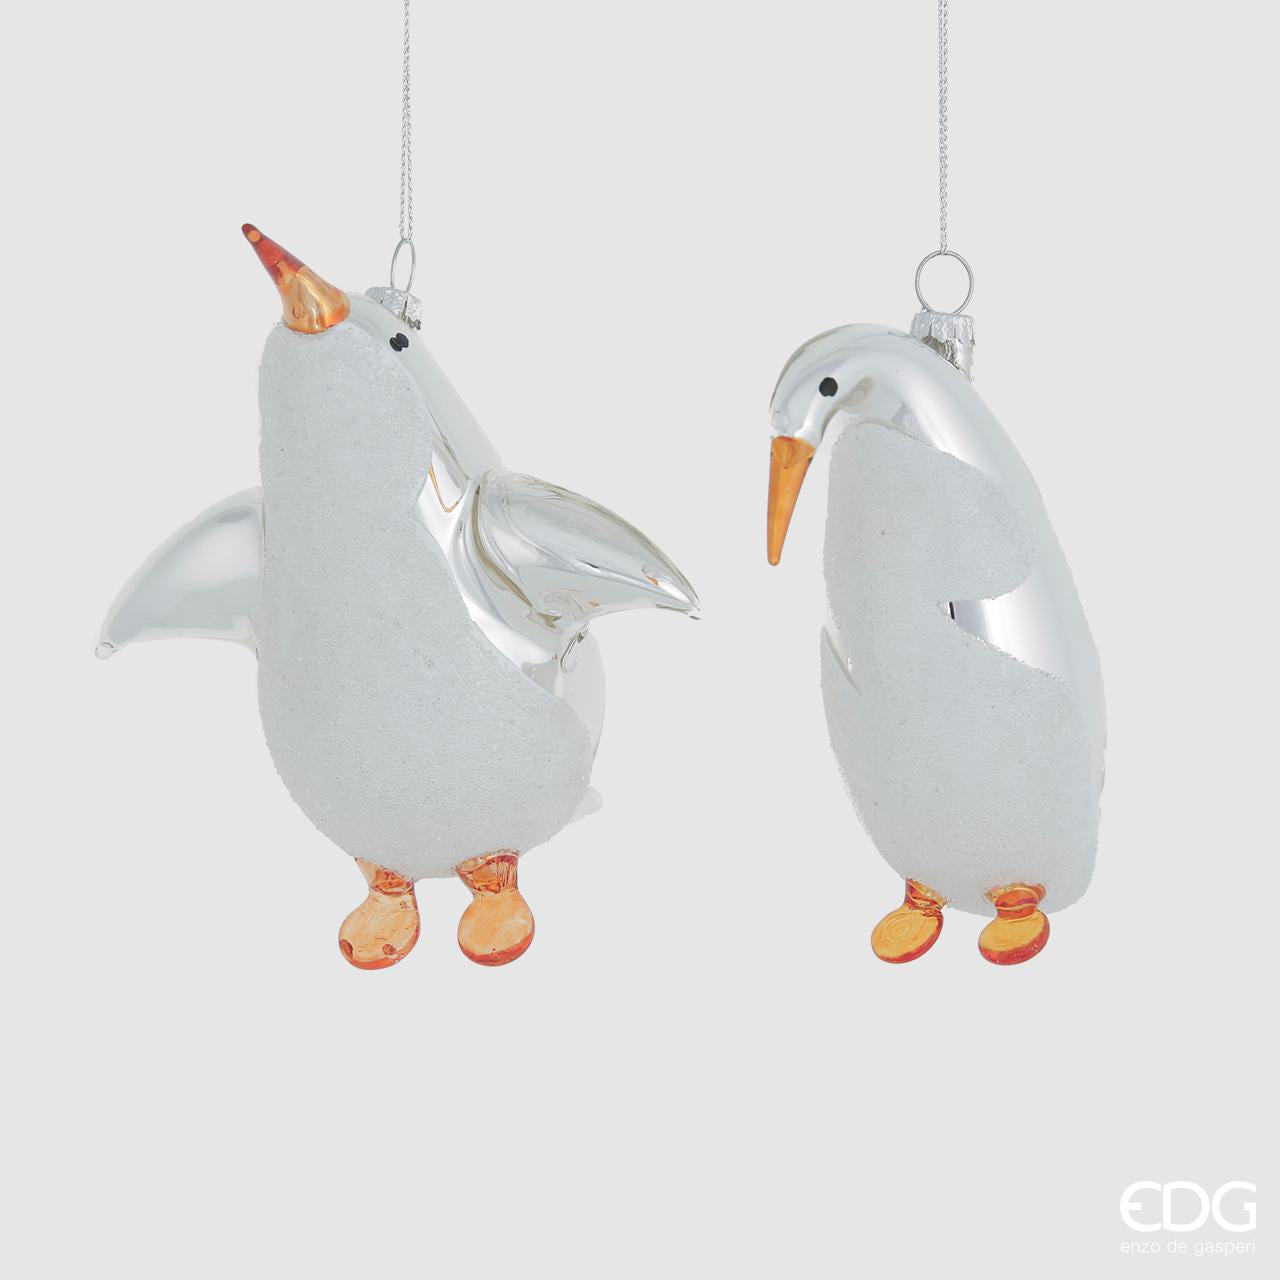 Decorazione per albero di Natale pinguino in vetro con colori argento, bianco e arancione in 2 modelli diversi cm 11.